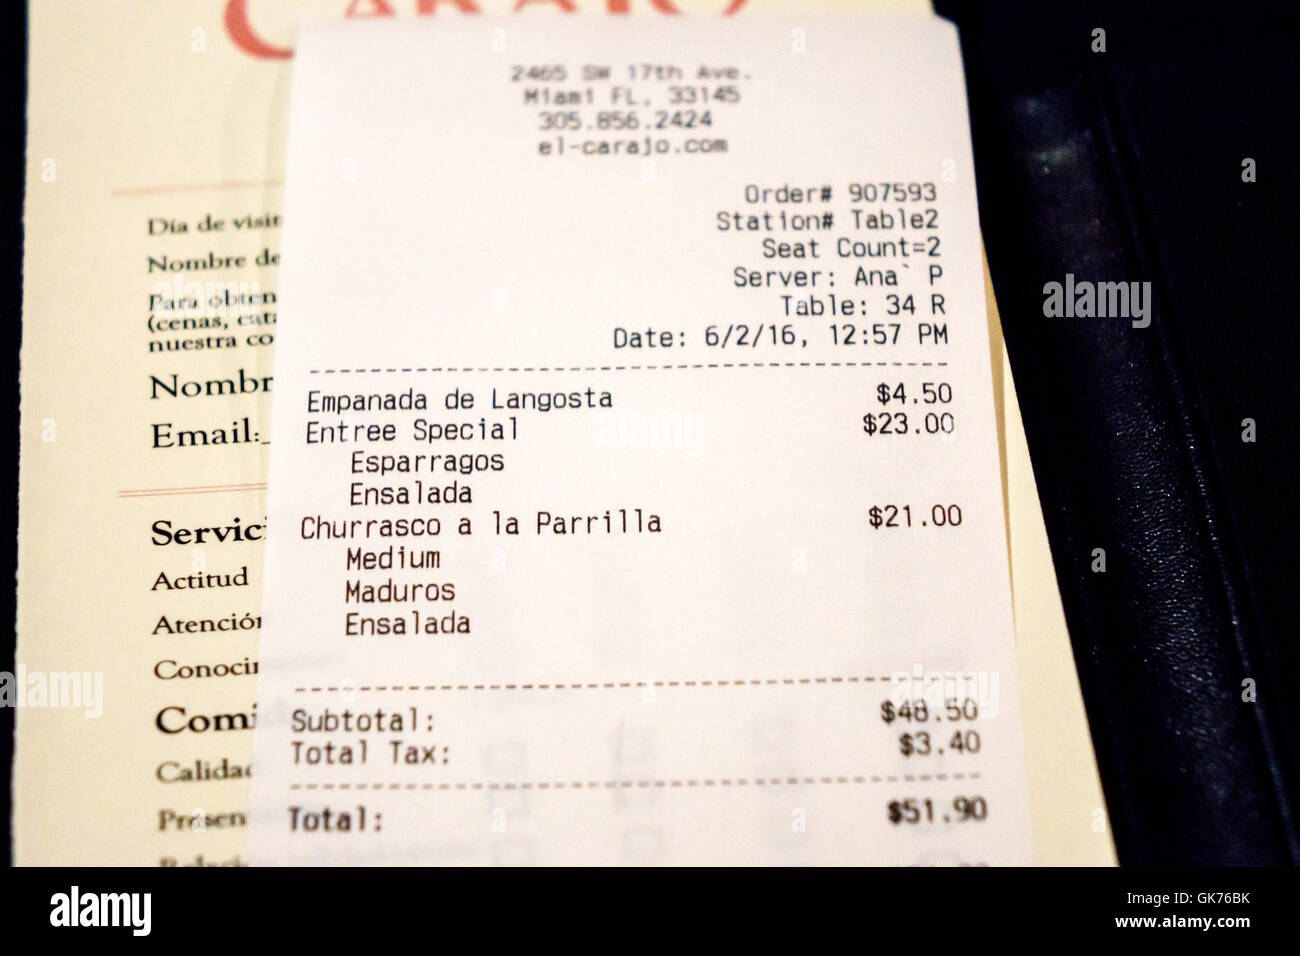 Miami Florida,El Carajo tapas wine bar ristorante con controllo dettagliato conto, spagnolo inglese lingua bilingue prezzo totale parziale tasse totale speciale, Foto Stock